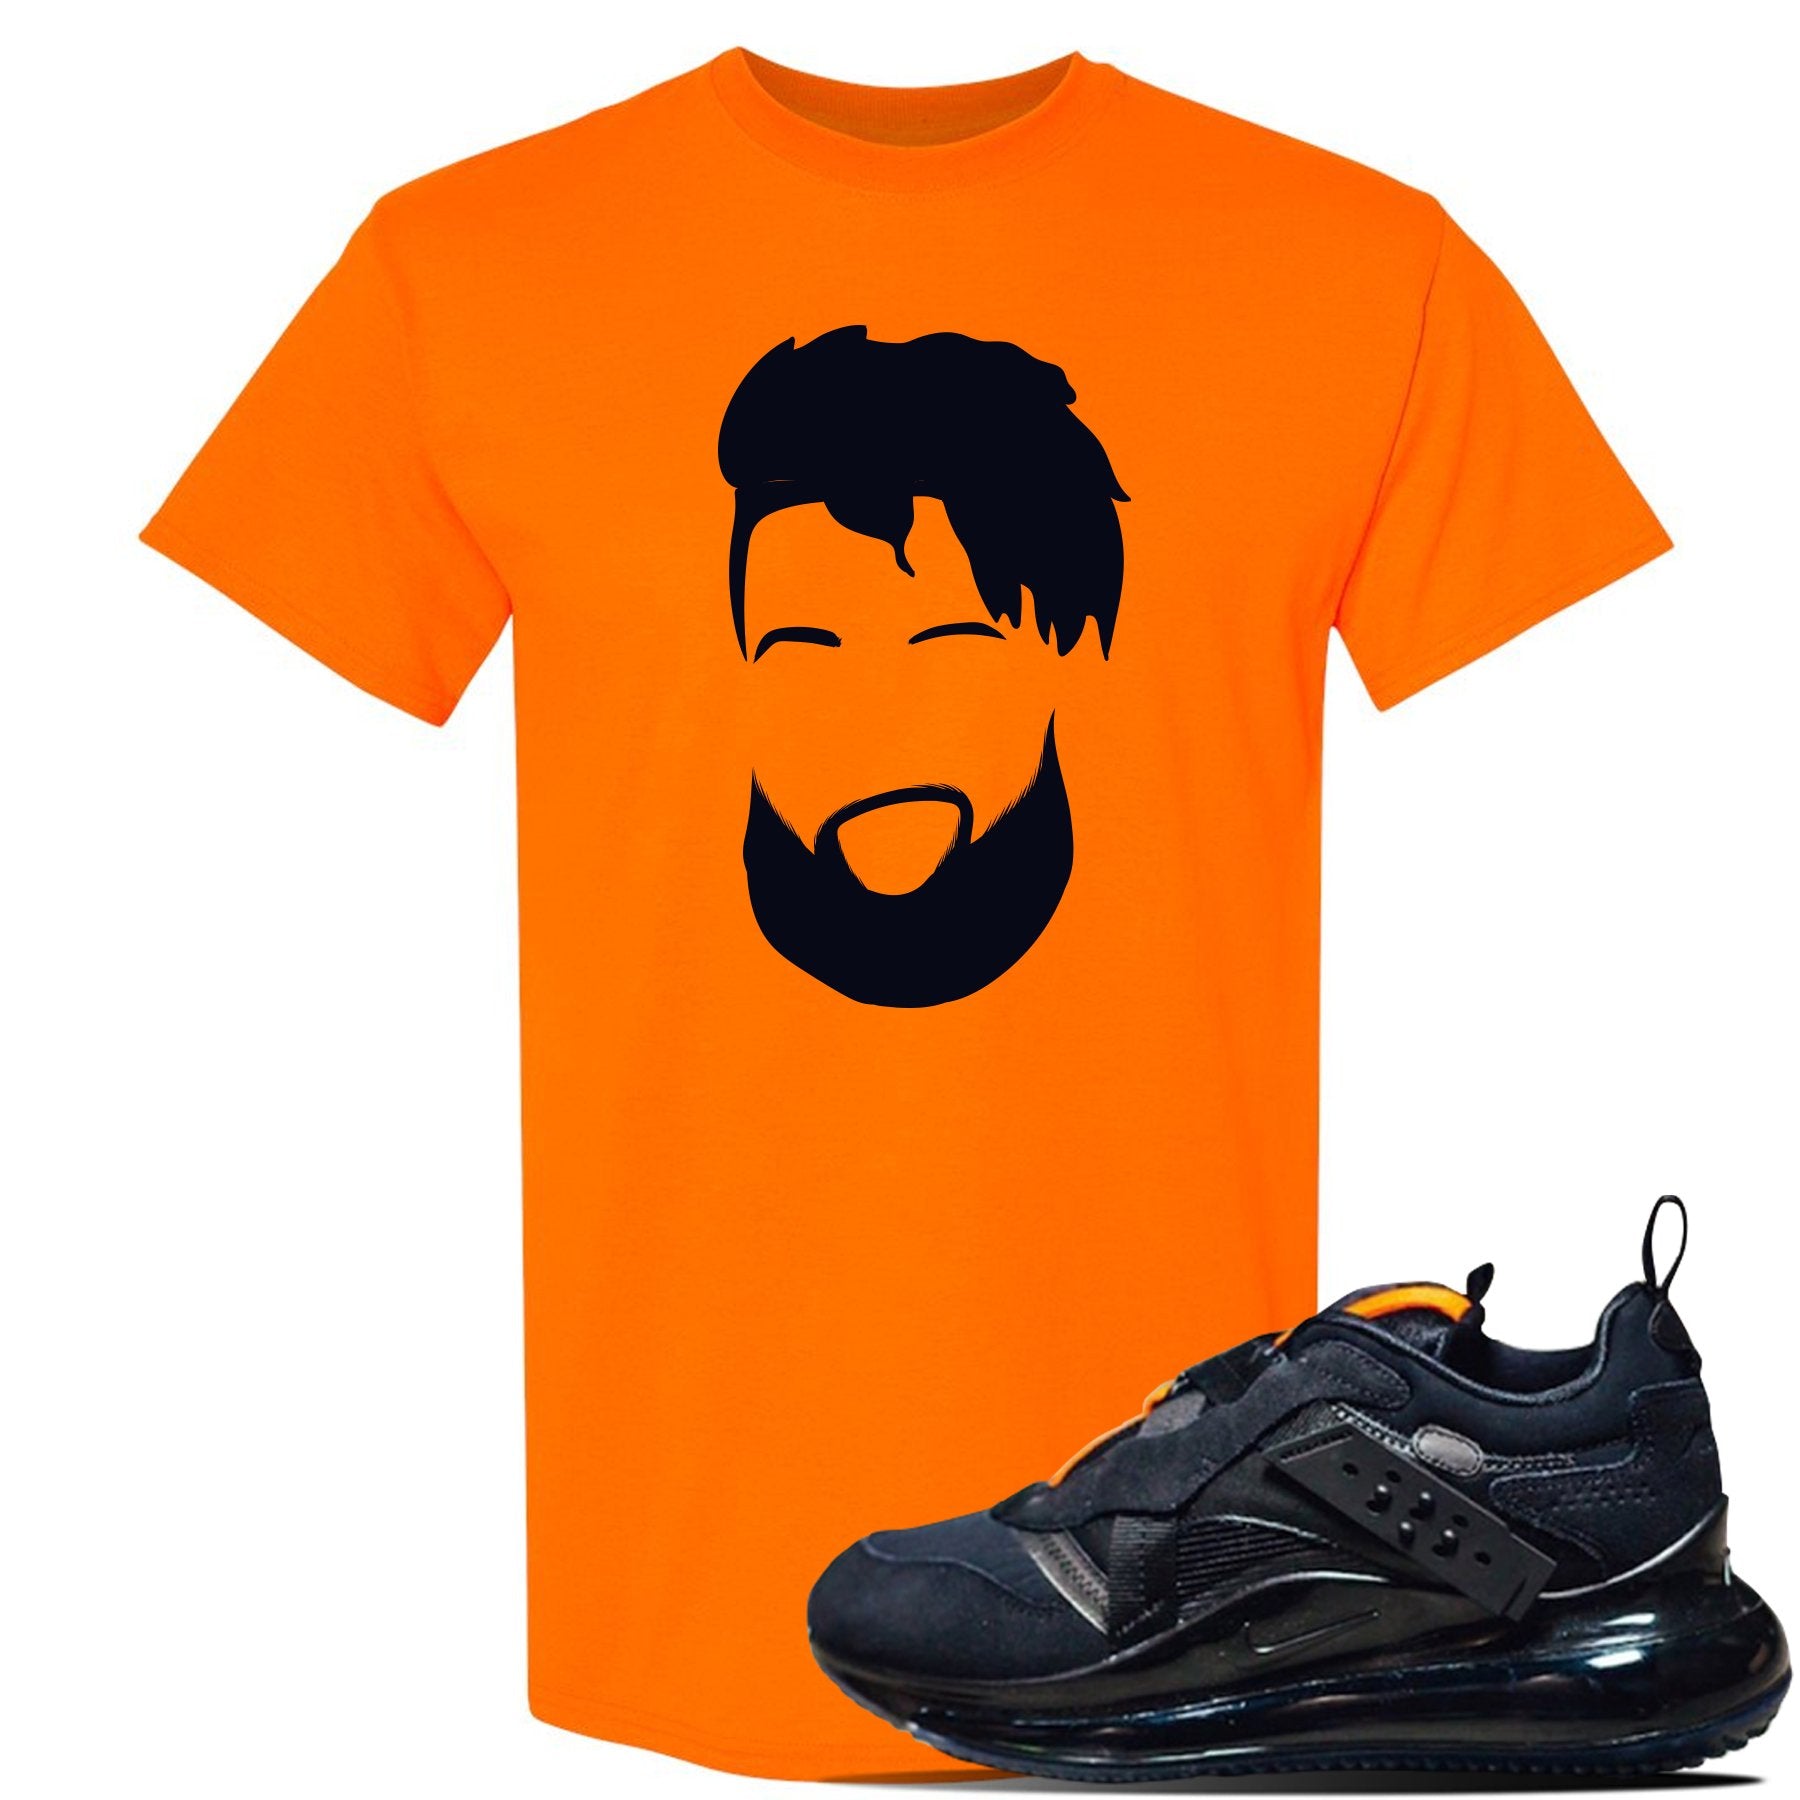 Air Max 720 OBJ Slip Sneaker Safety Orange T Shirt | Tees to match Nike Air Max 720 OBJ Slip Shoes | OBJ Head